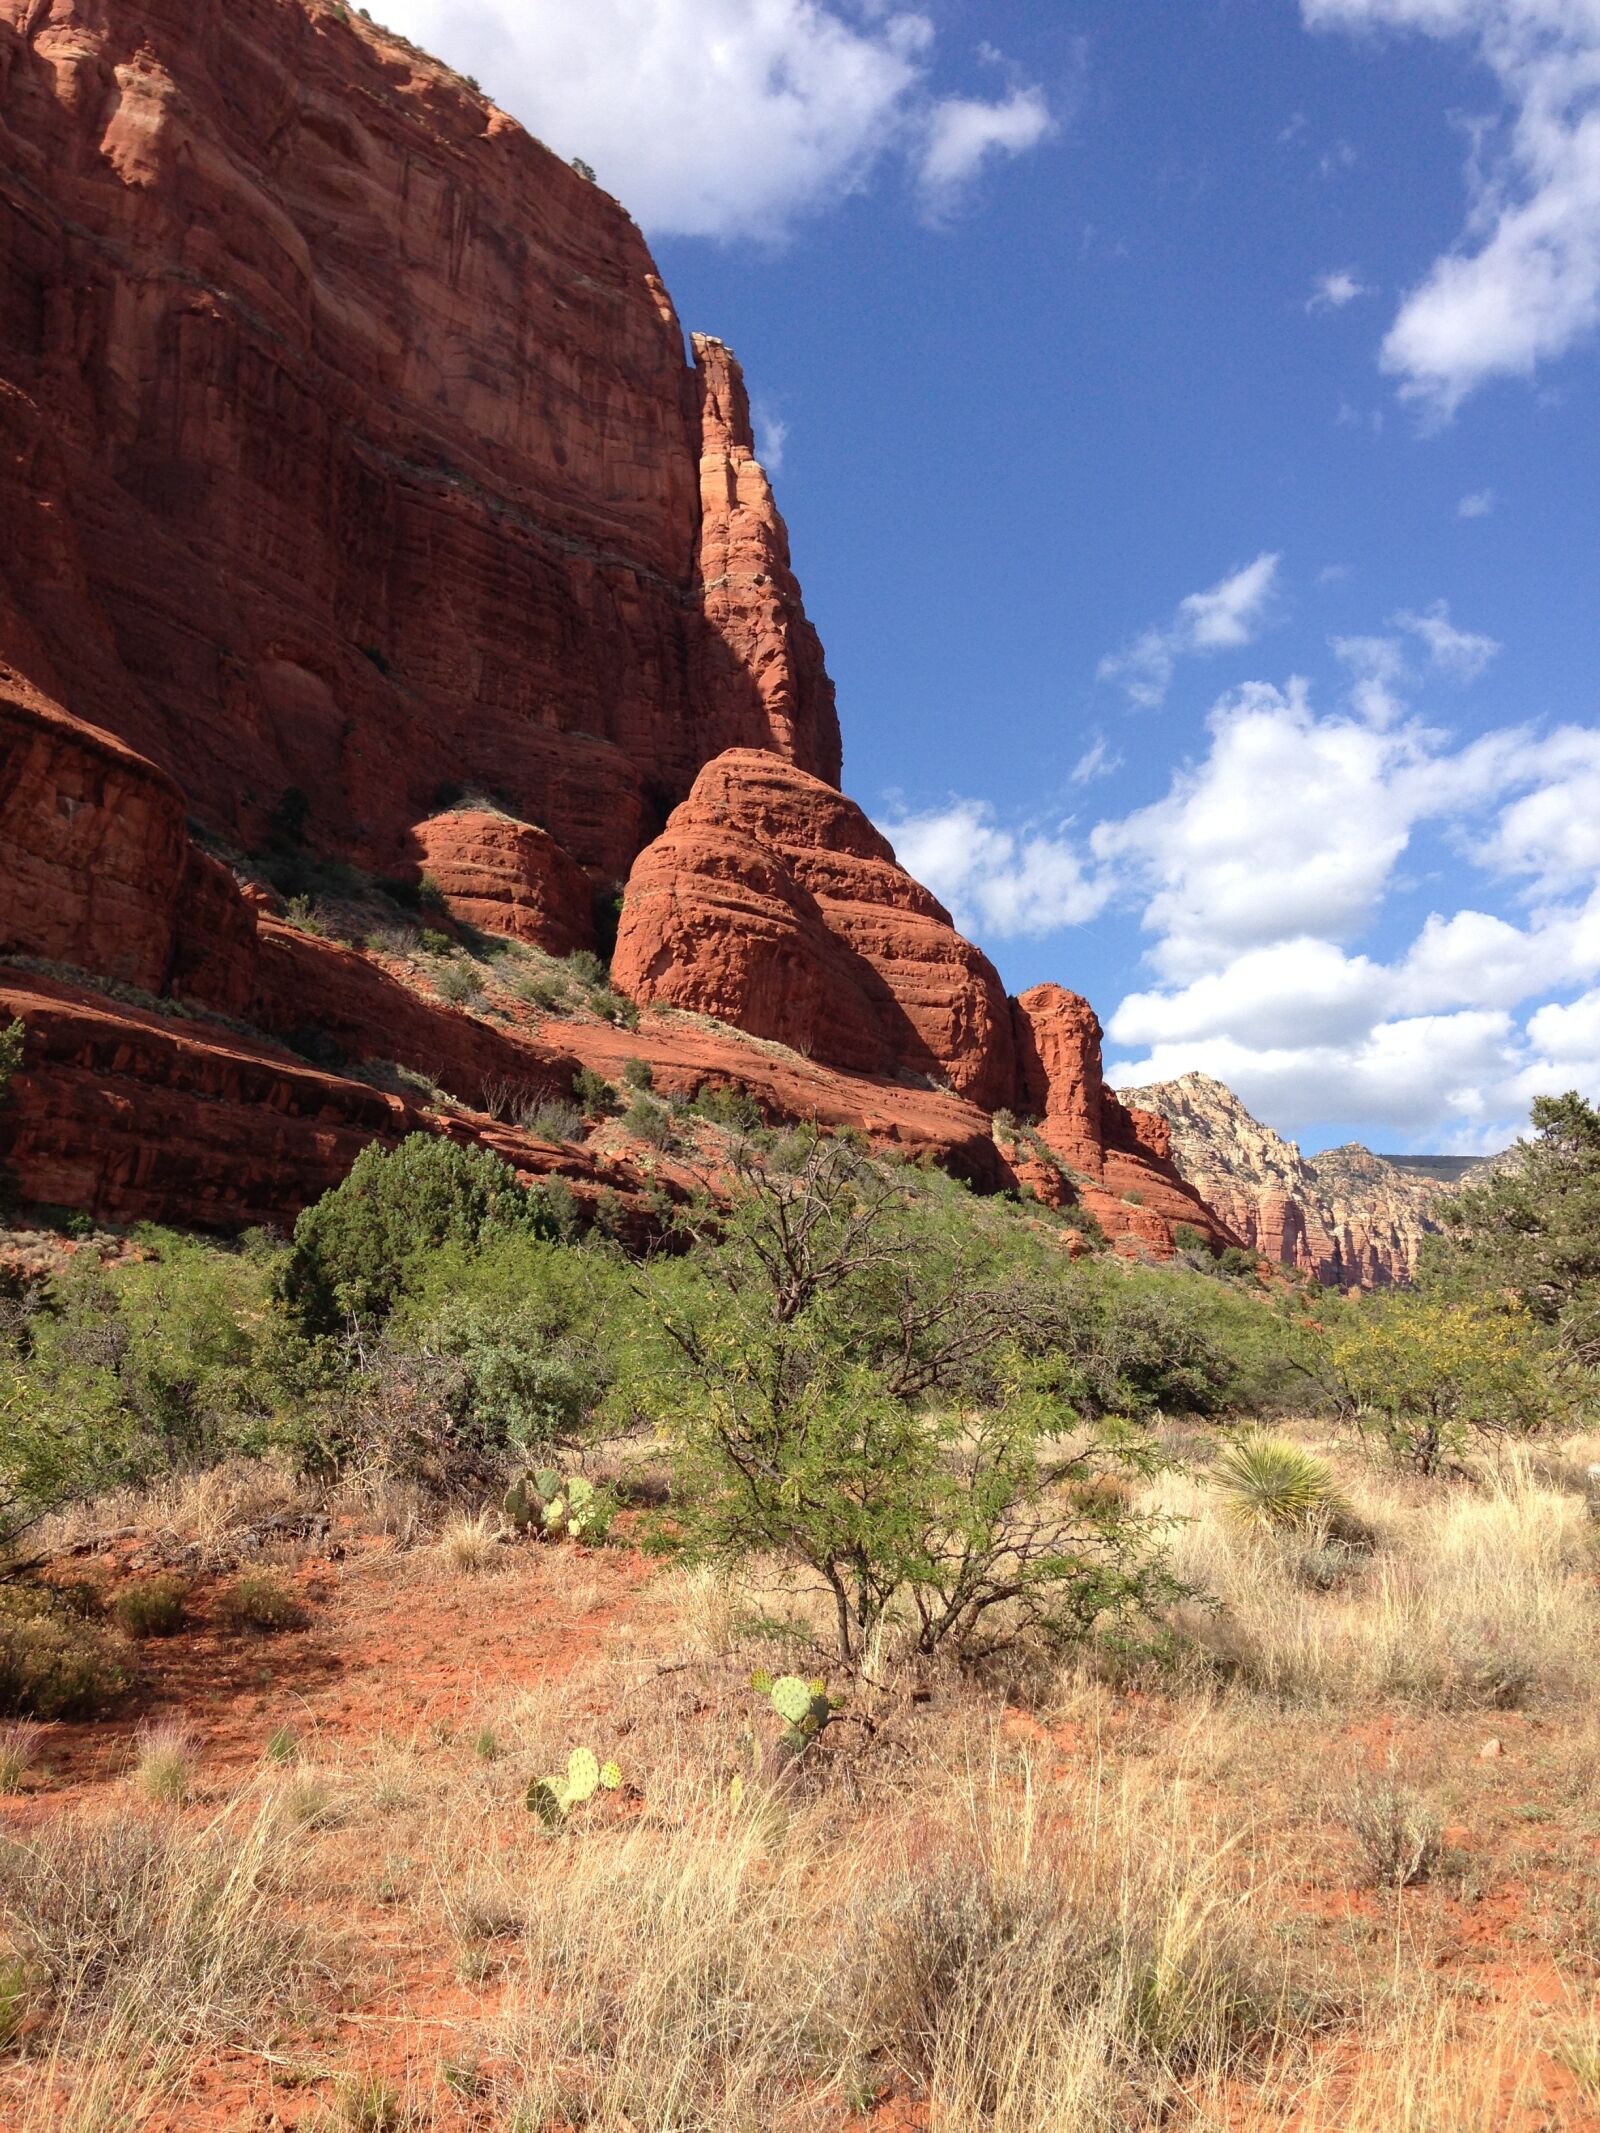 Apple iPhone 5 sample photo. Arizona, sedona, landscape photography